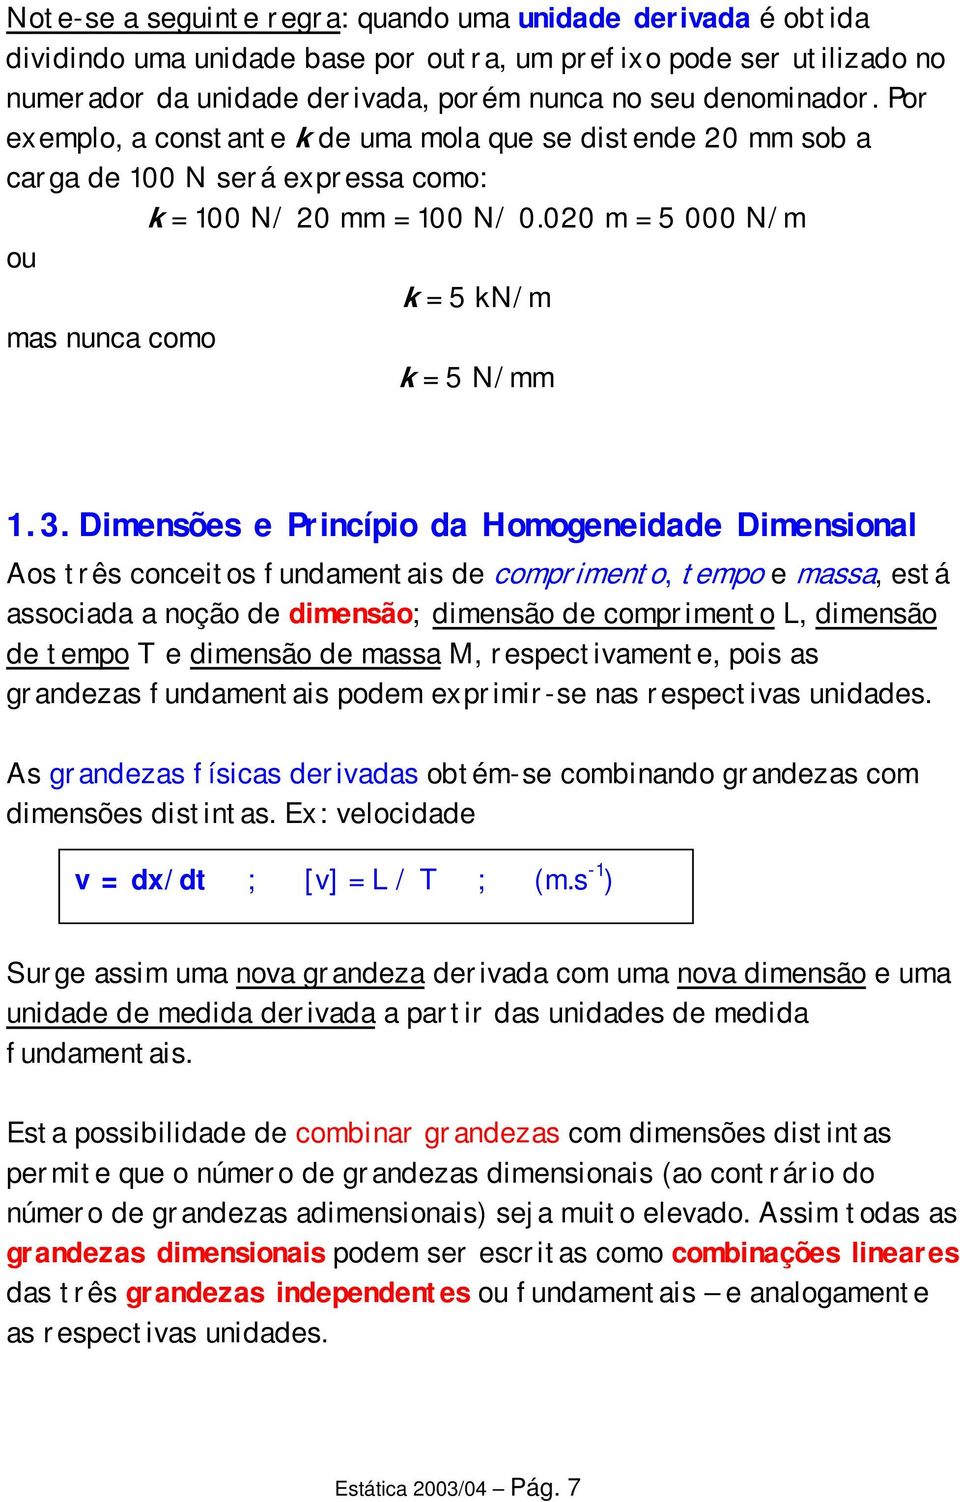 Dimensões e Princípio da Homogeneidade Dimensional Aos três conceitos fundamentais de comprimento, tempo e massa, está associada a noção de dimensão; dimensão de comprimento L, dimensão de tempo T e